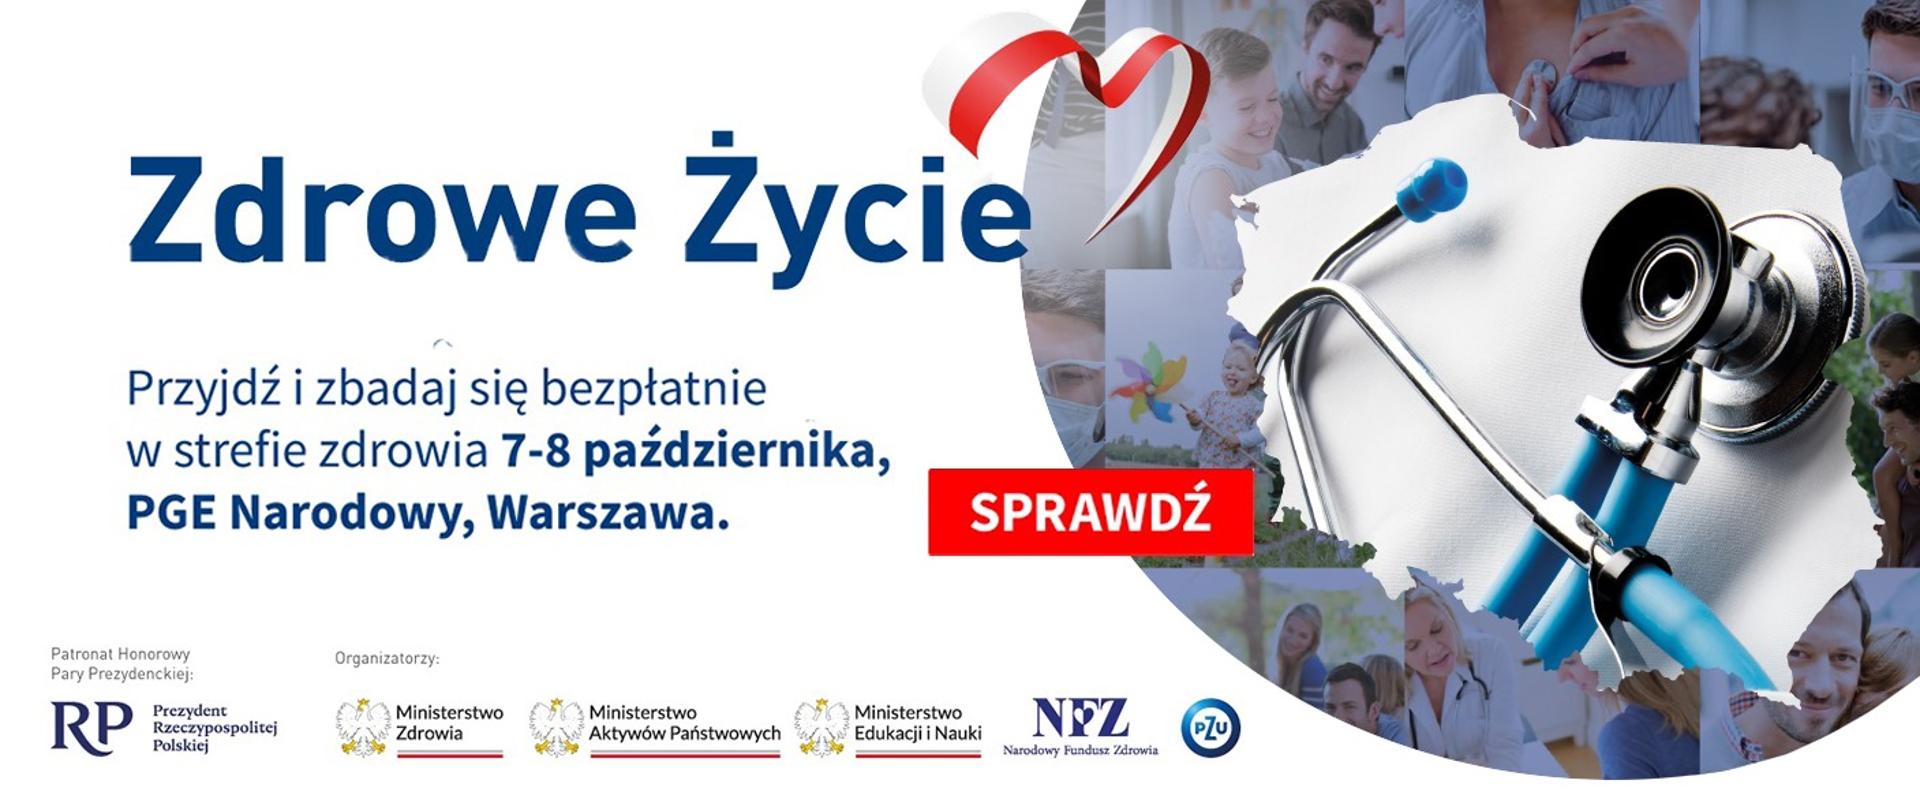 Grafika - lekarski stetoskop, obok napis Zdrowe życie - przyjdź i zbadaj się bezpłatnie w strefie zdrowia, 7-8 października PGE Narodowy, Warszawa.